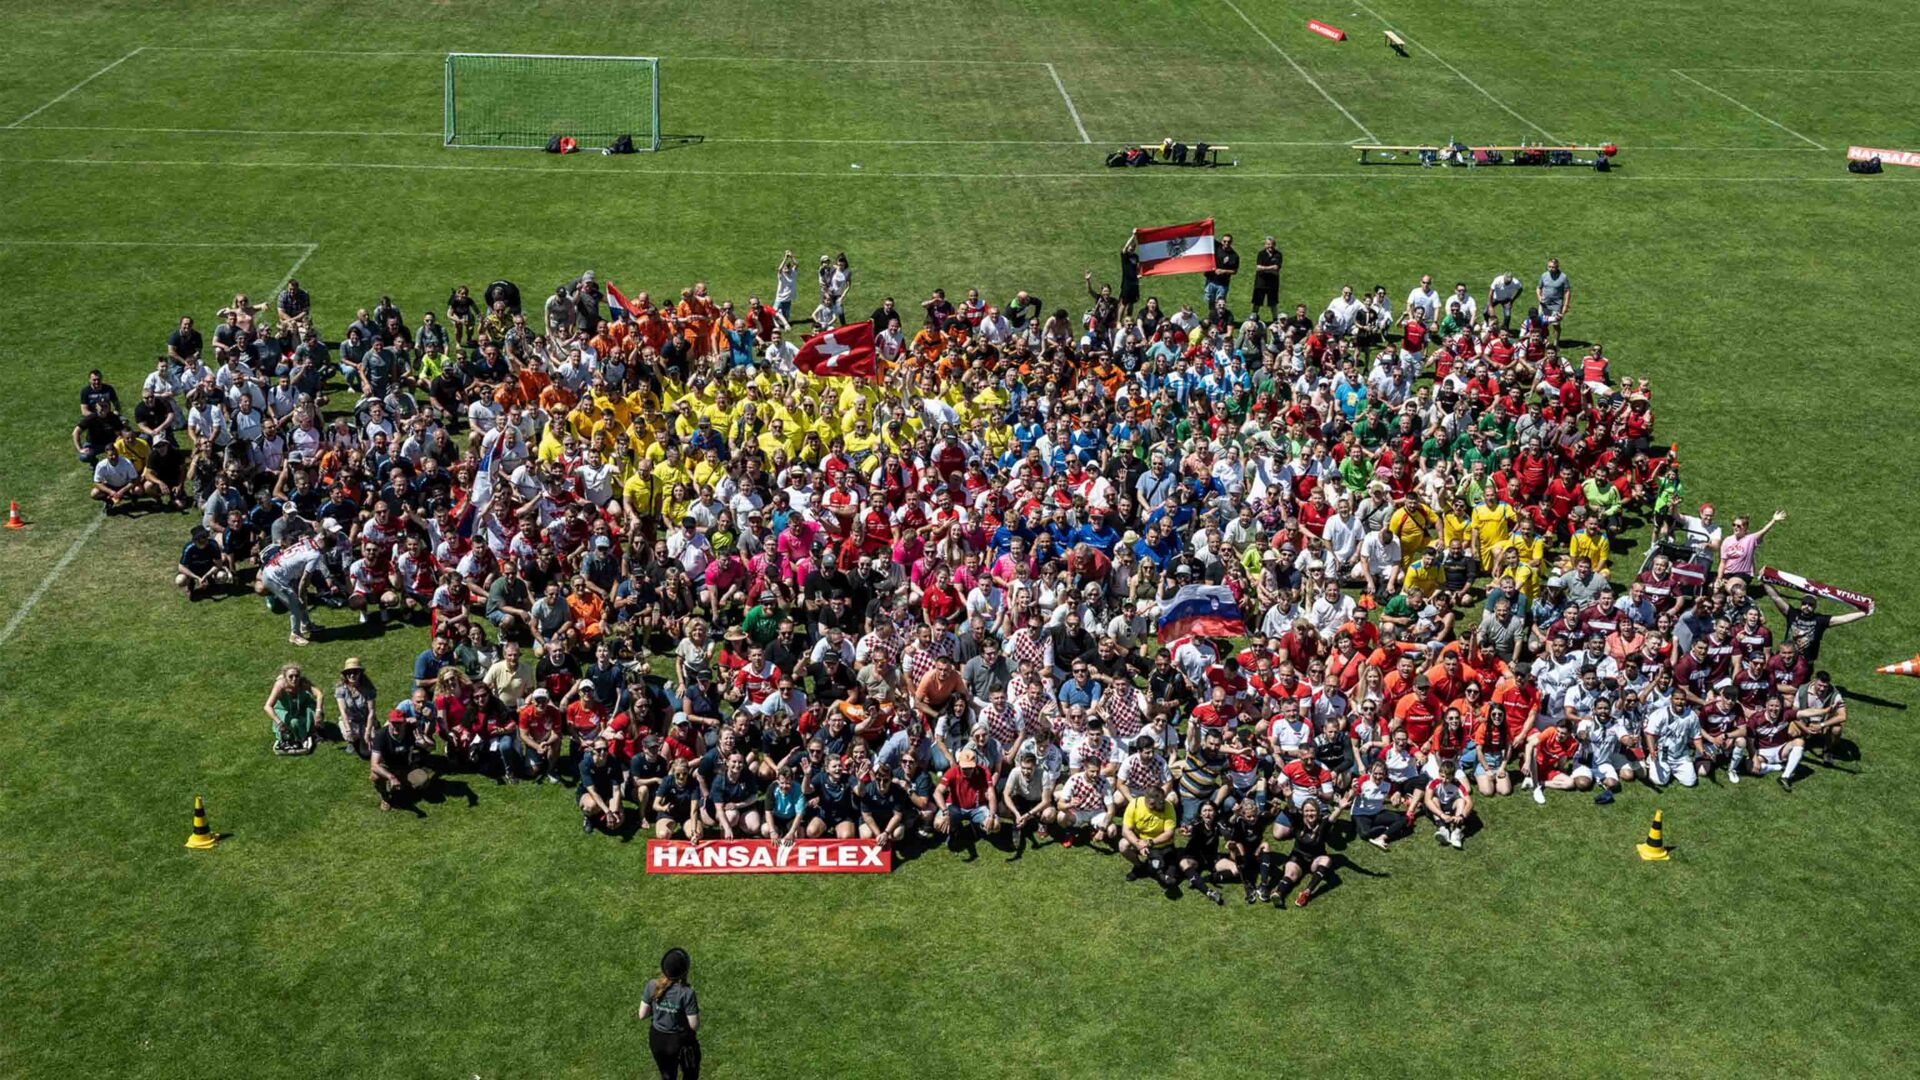 großes Gruppenbild auf einem Fußballrasen beim Hansaflex Fußballturnier